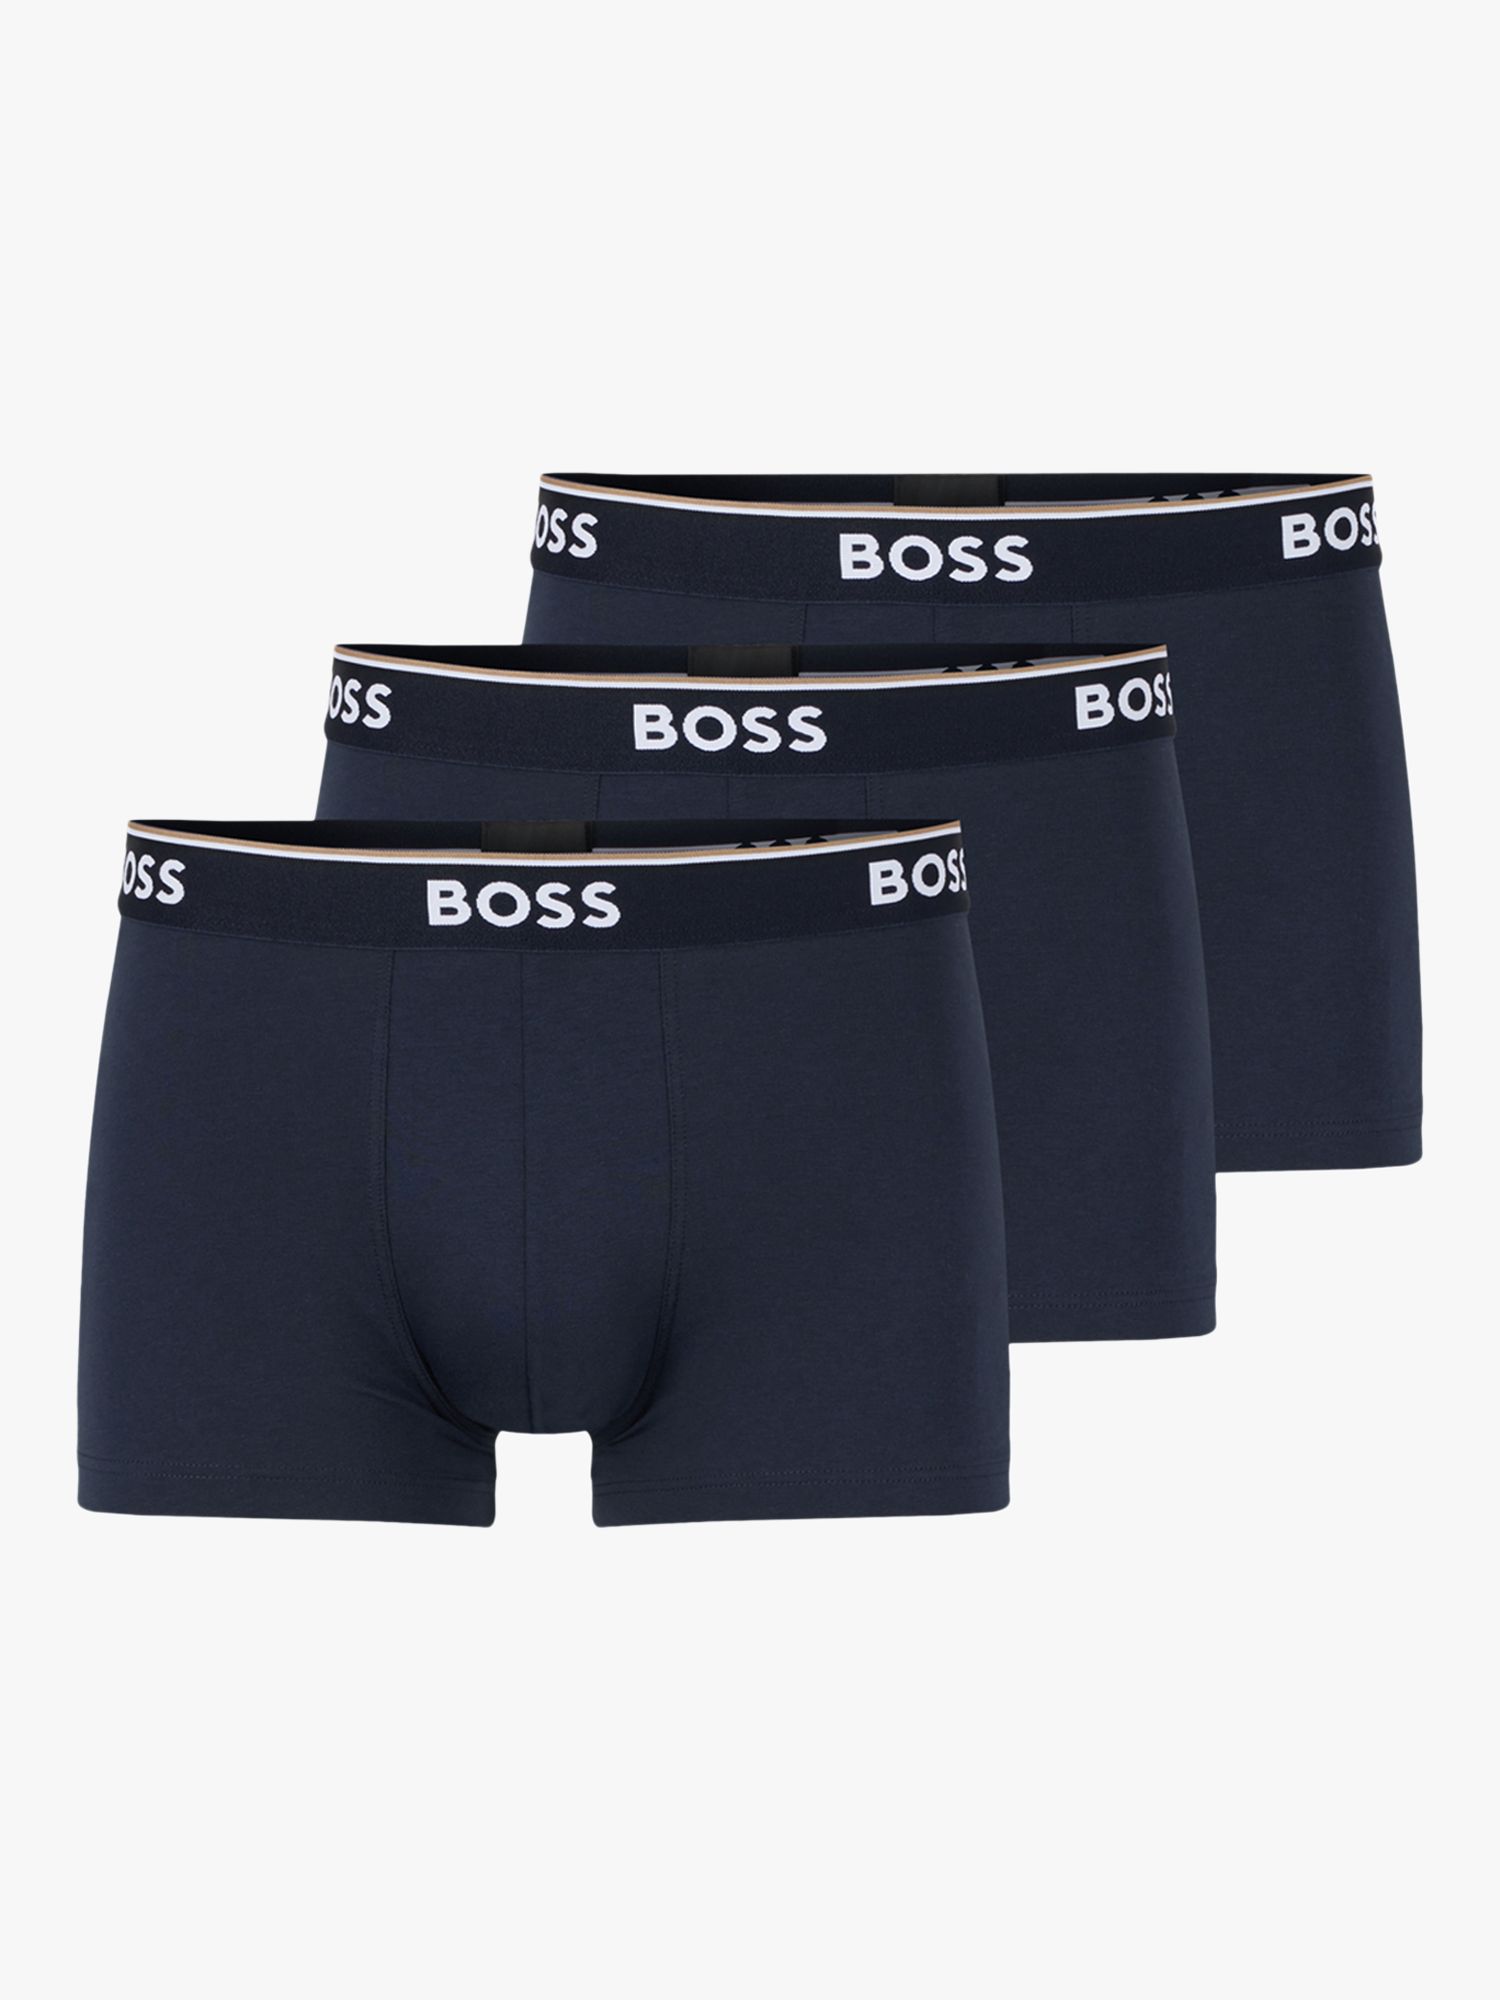 BOSS Power Cotton Logo Waistband Trunks, Pack of 3, Open Blue, S